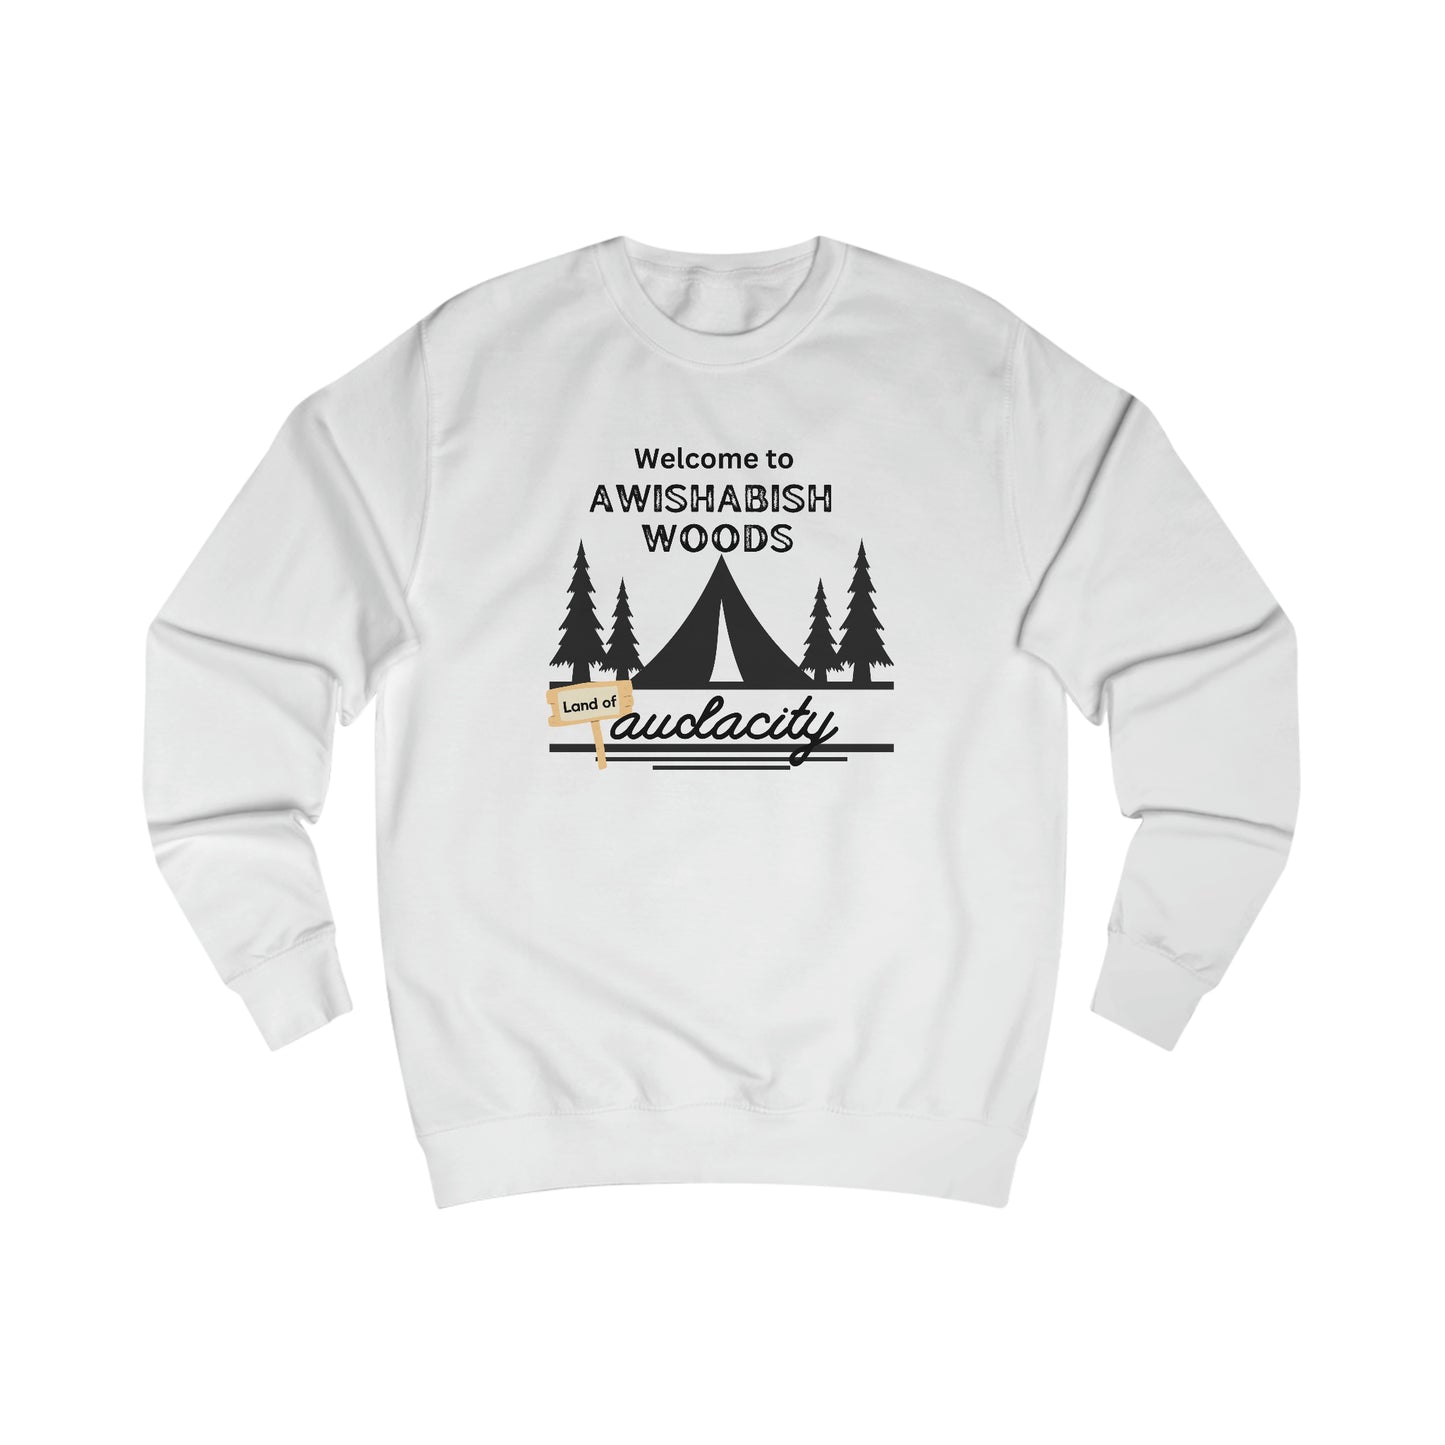 "Awishabish woods" sassy sweatshirt - Sassy quote shirt - bestie birthday gift